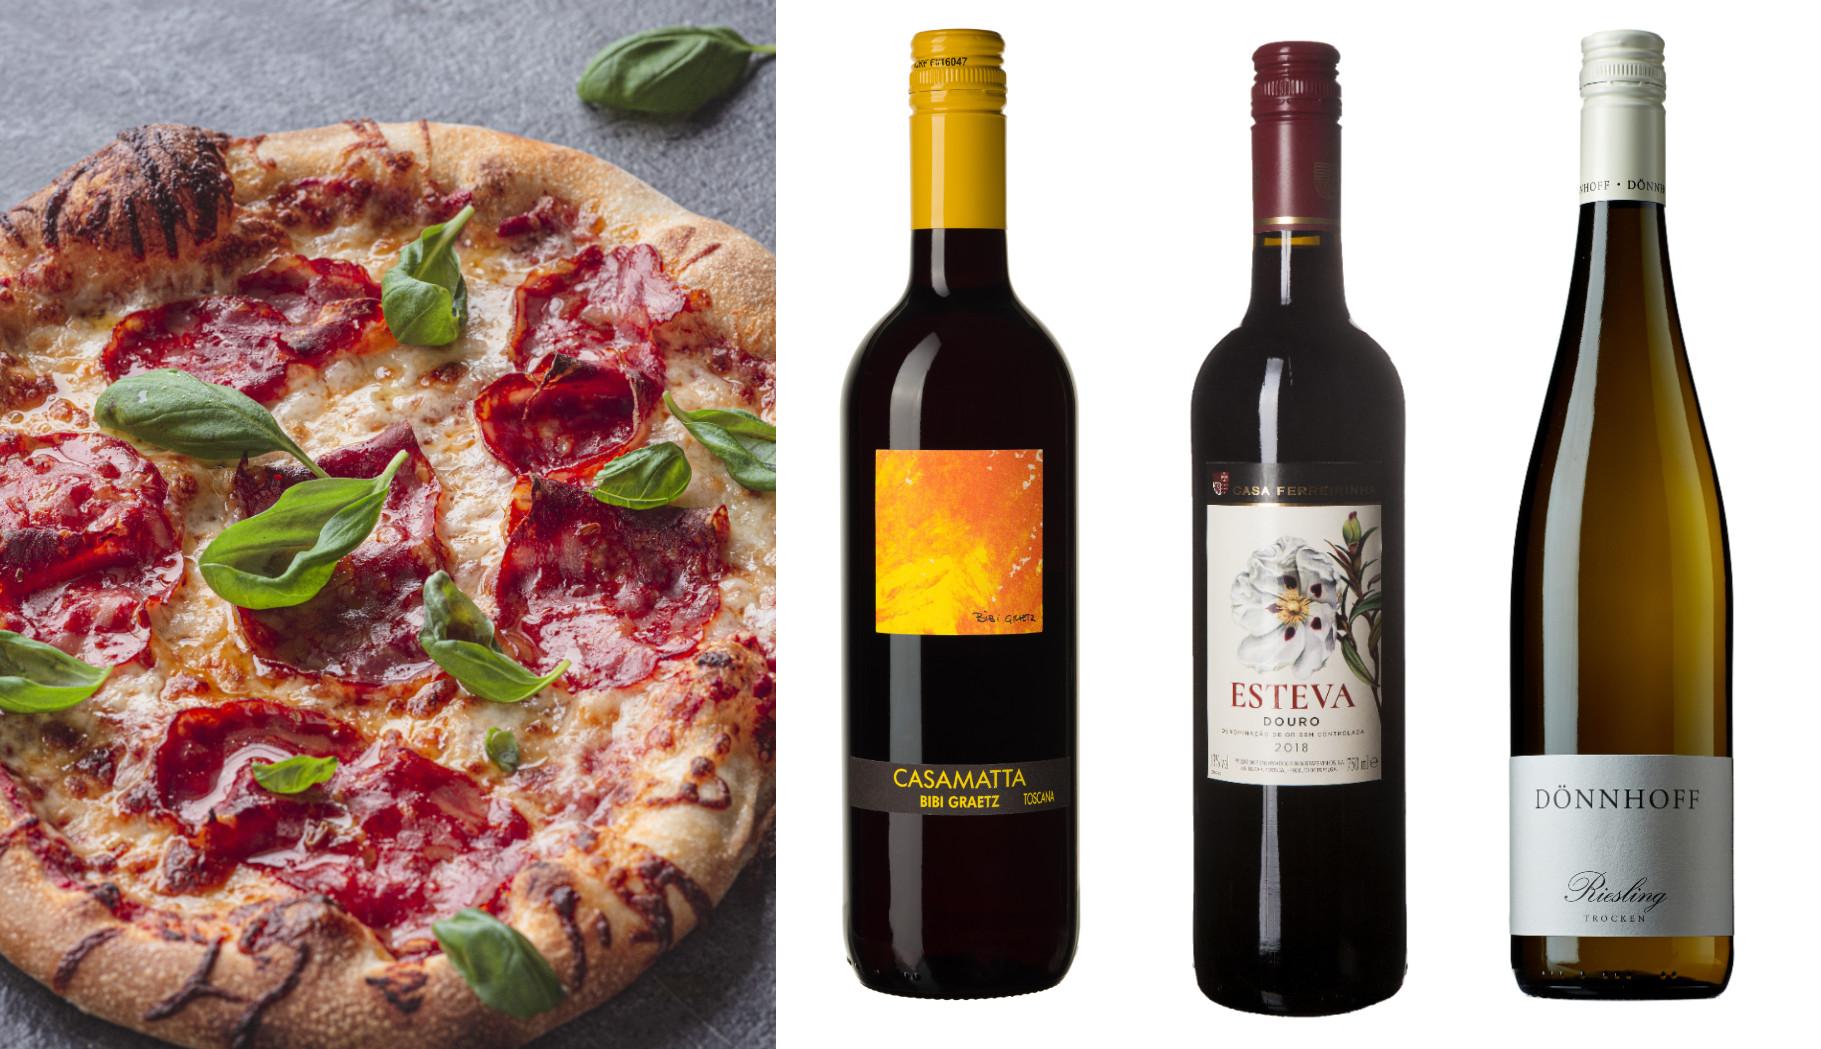 PIZZAKUPP: Ukens rødvin passer perfekt til pizza ifølge vår anmelder. Oppskriften på Lise Finckenhagens italienskinspirerte pizza finner du nederst i saken.